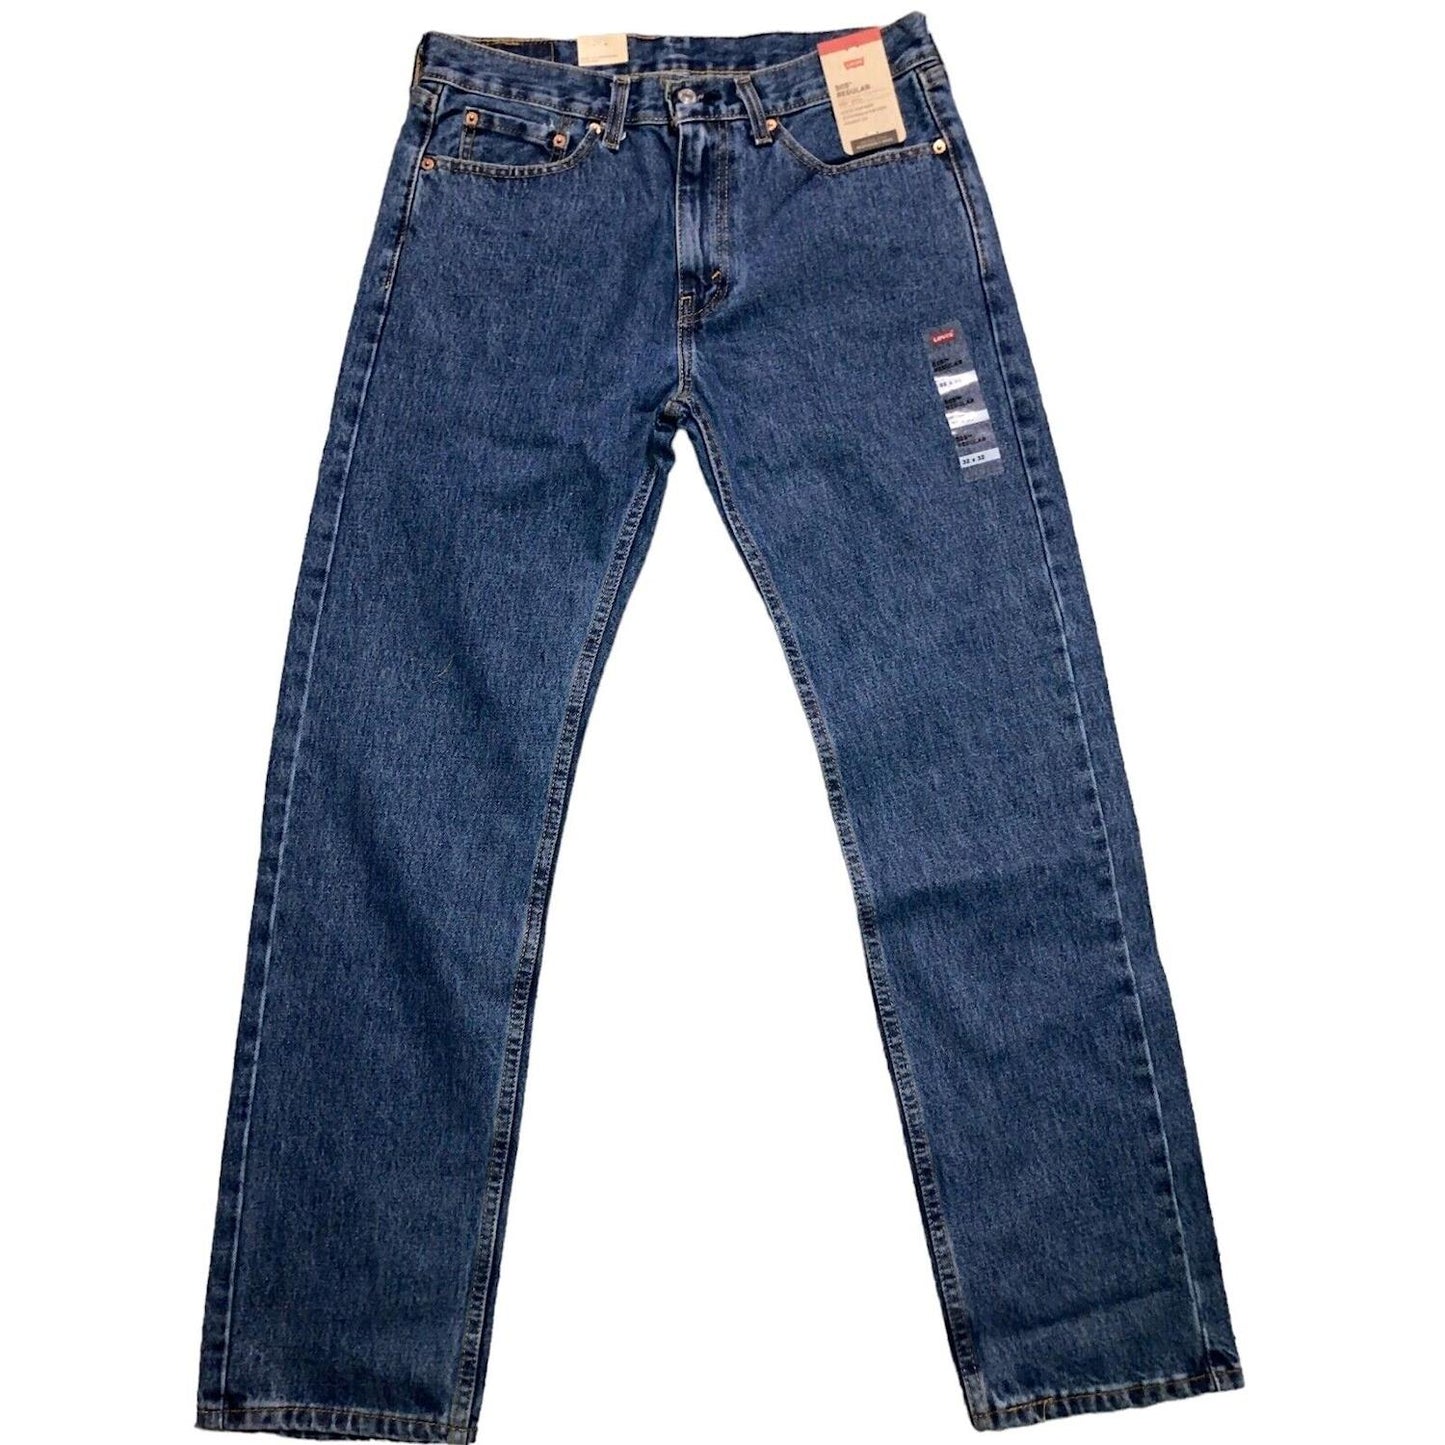 Levi's Men's 505 Regular Fit Jeans Medium Stonewash 32x32